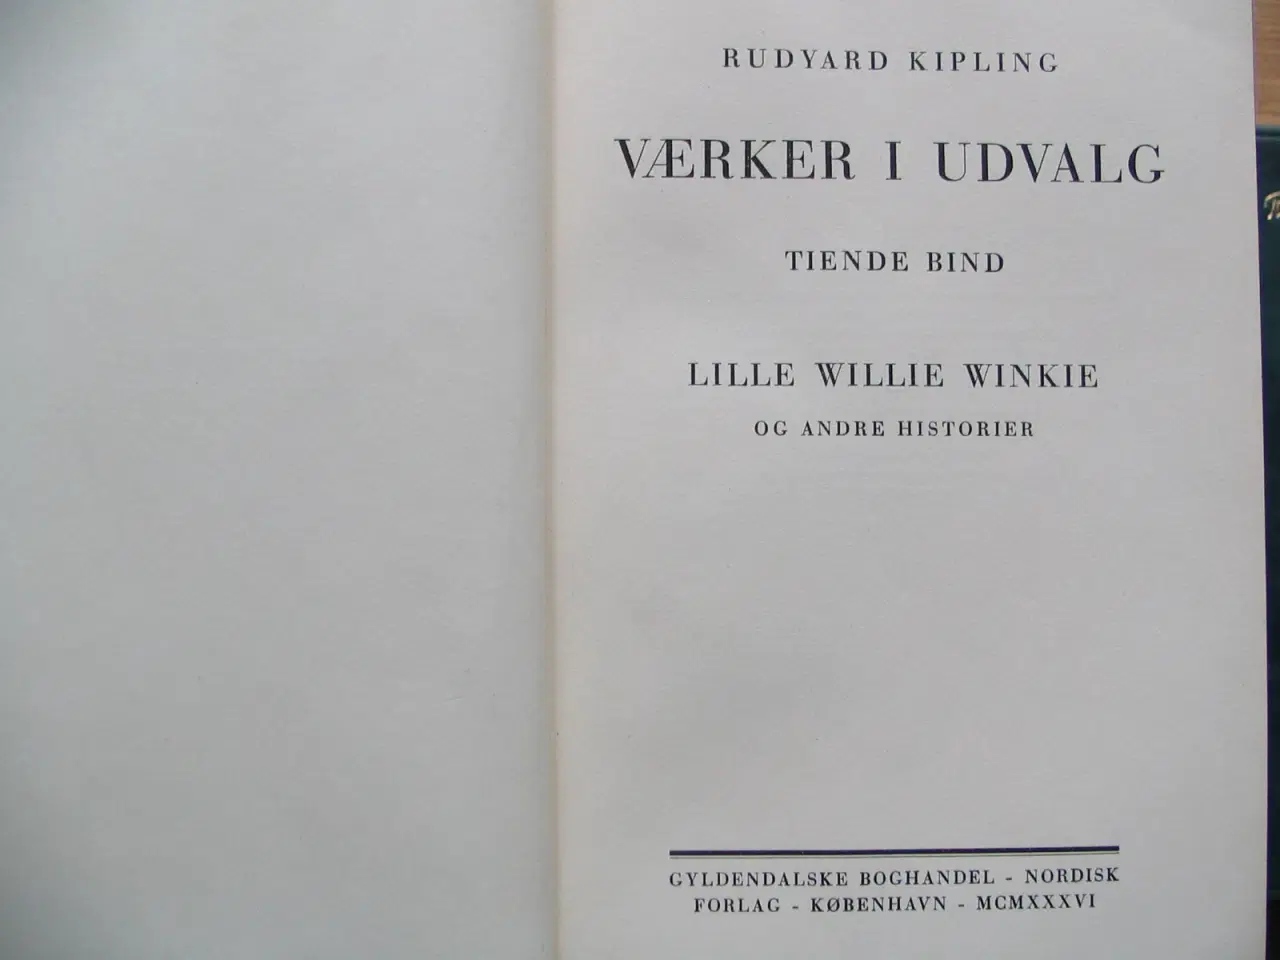 Billede 8 - Rudyard Kipling (1865-1936). Værker i 12 bind